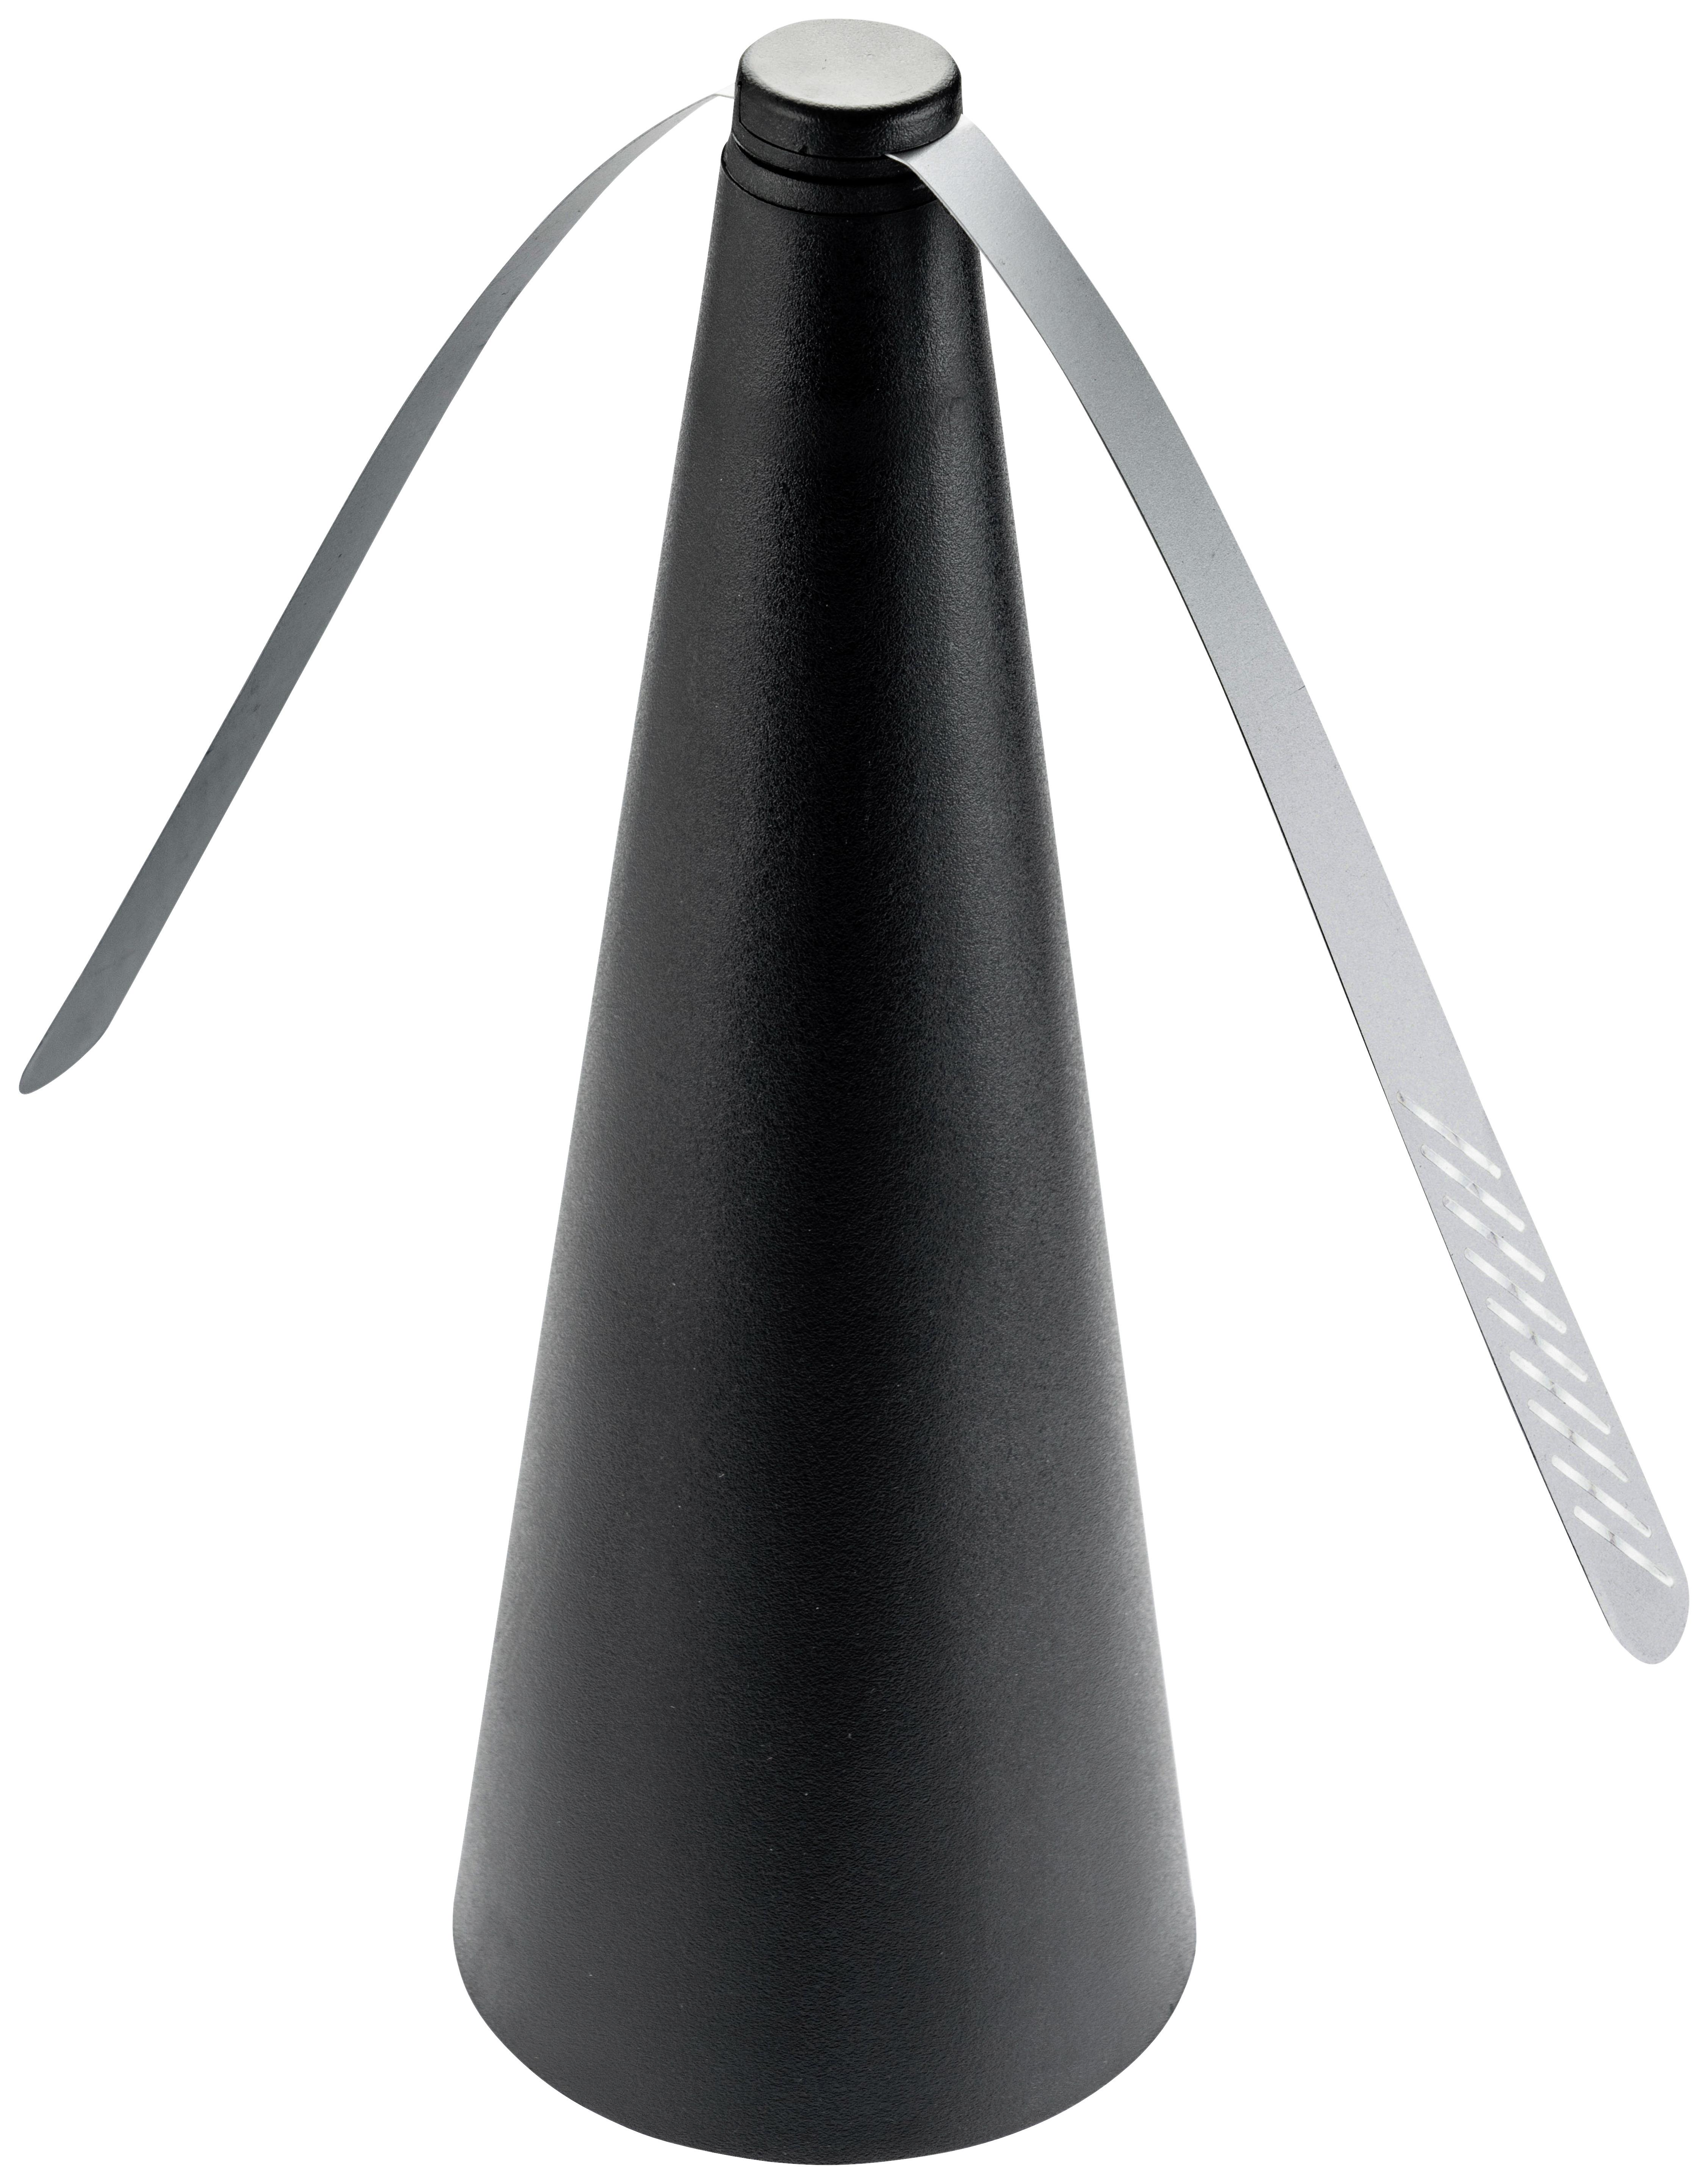 Mini Ventilátor Flye - čierna, Konvenčný, plast (8,4/25cm) - Modern Living